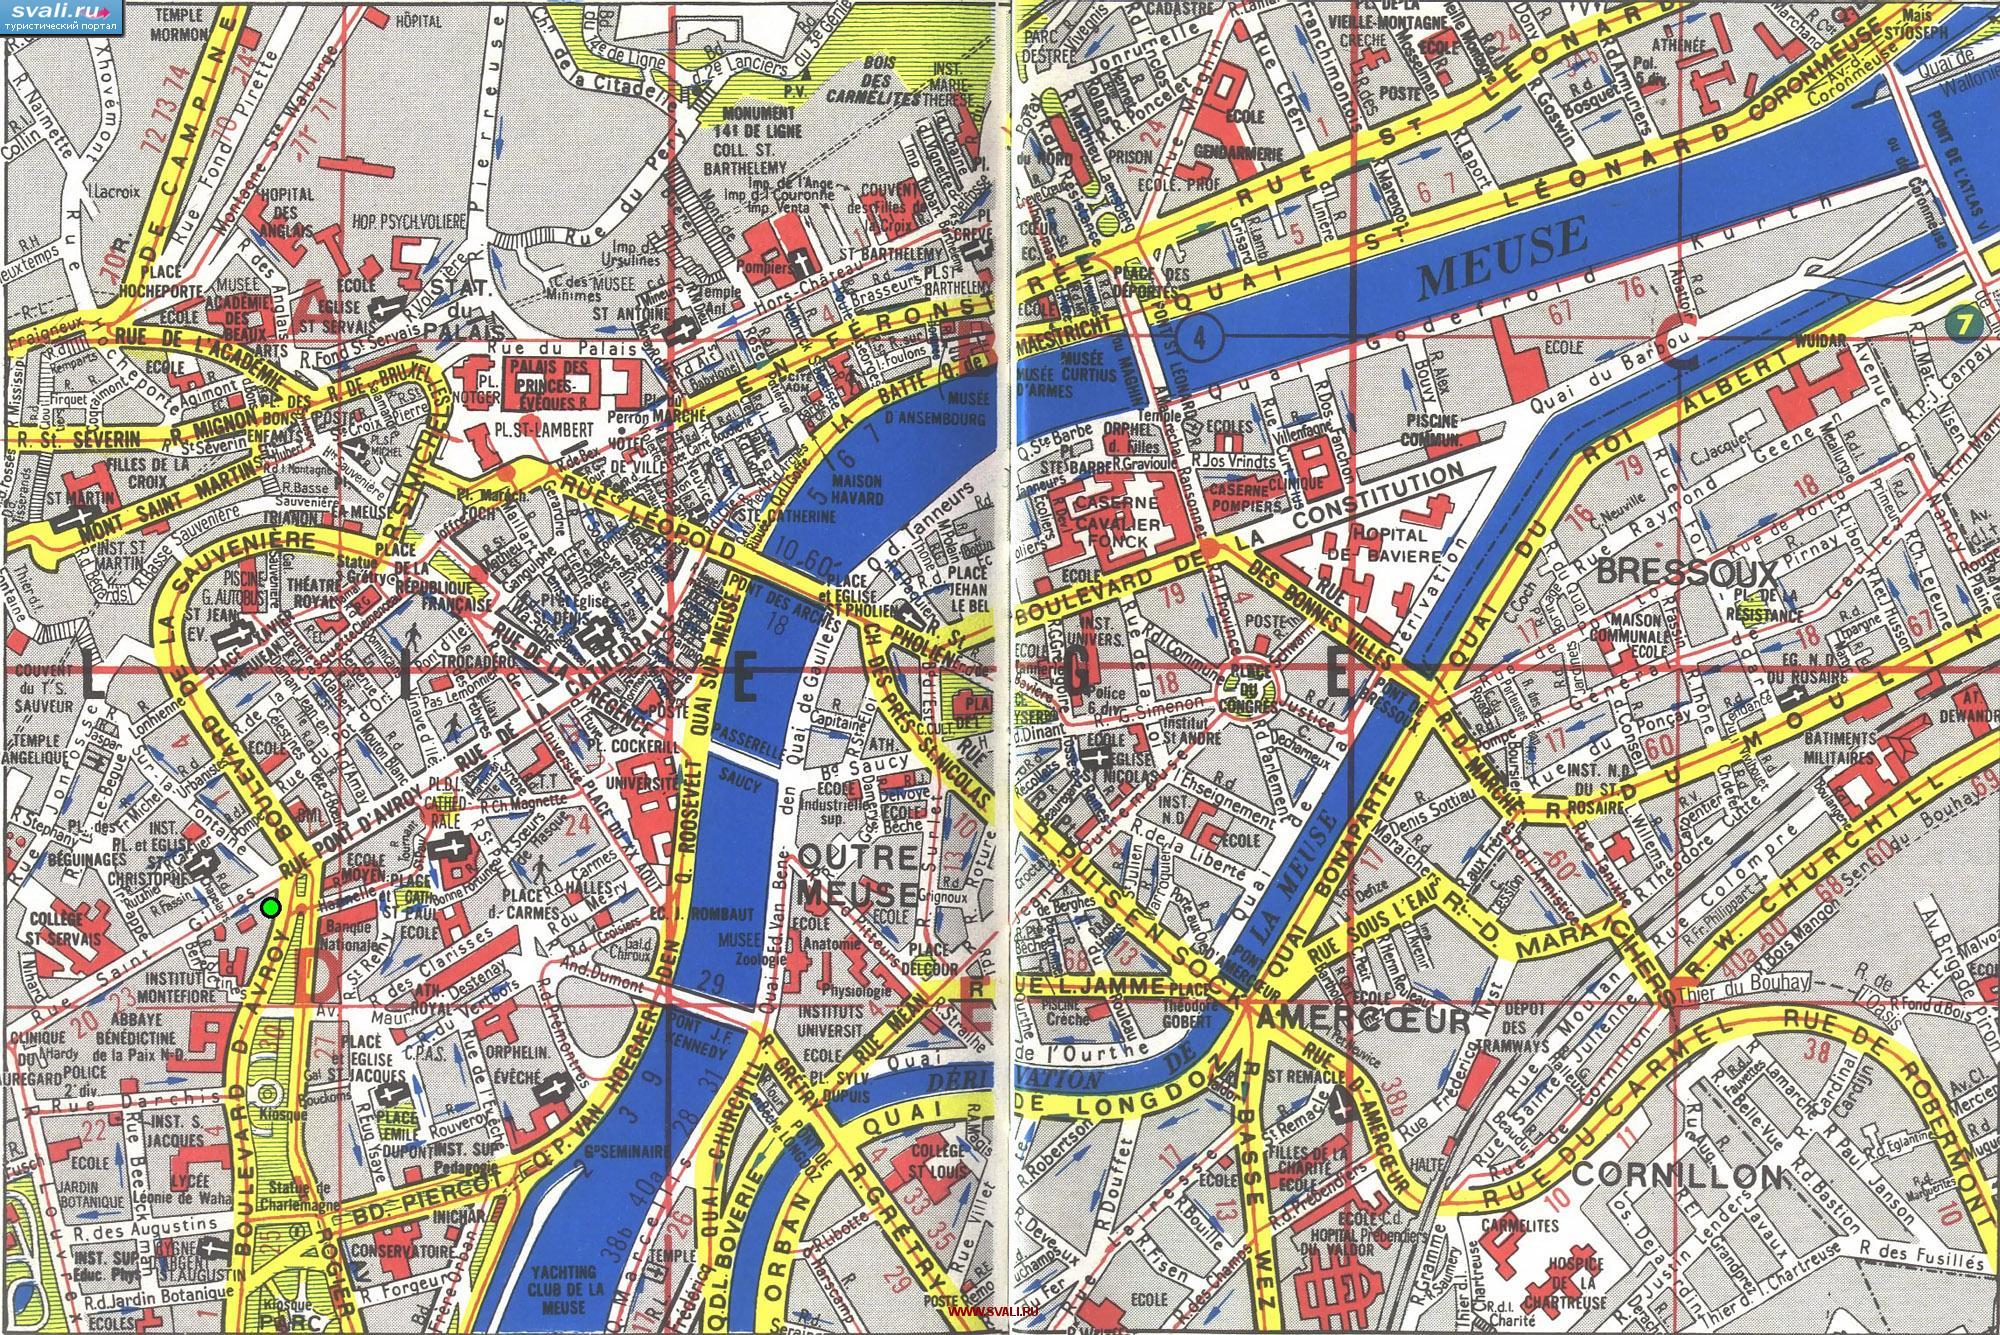 Подробная туристическая карта центра Льежа, Бельгия (фр.)